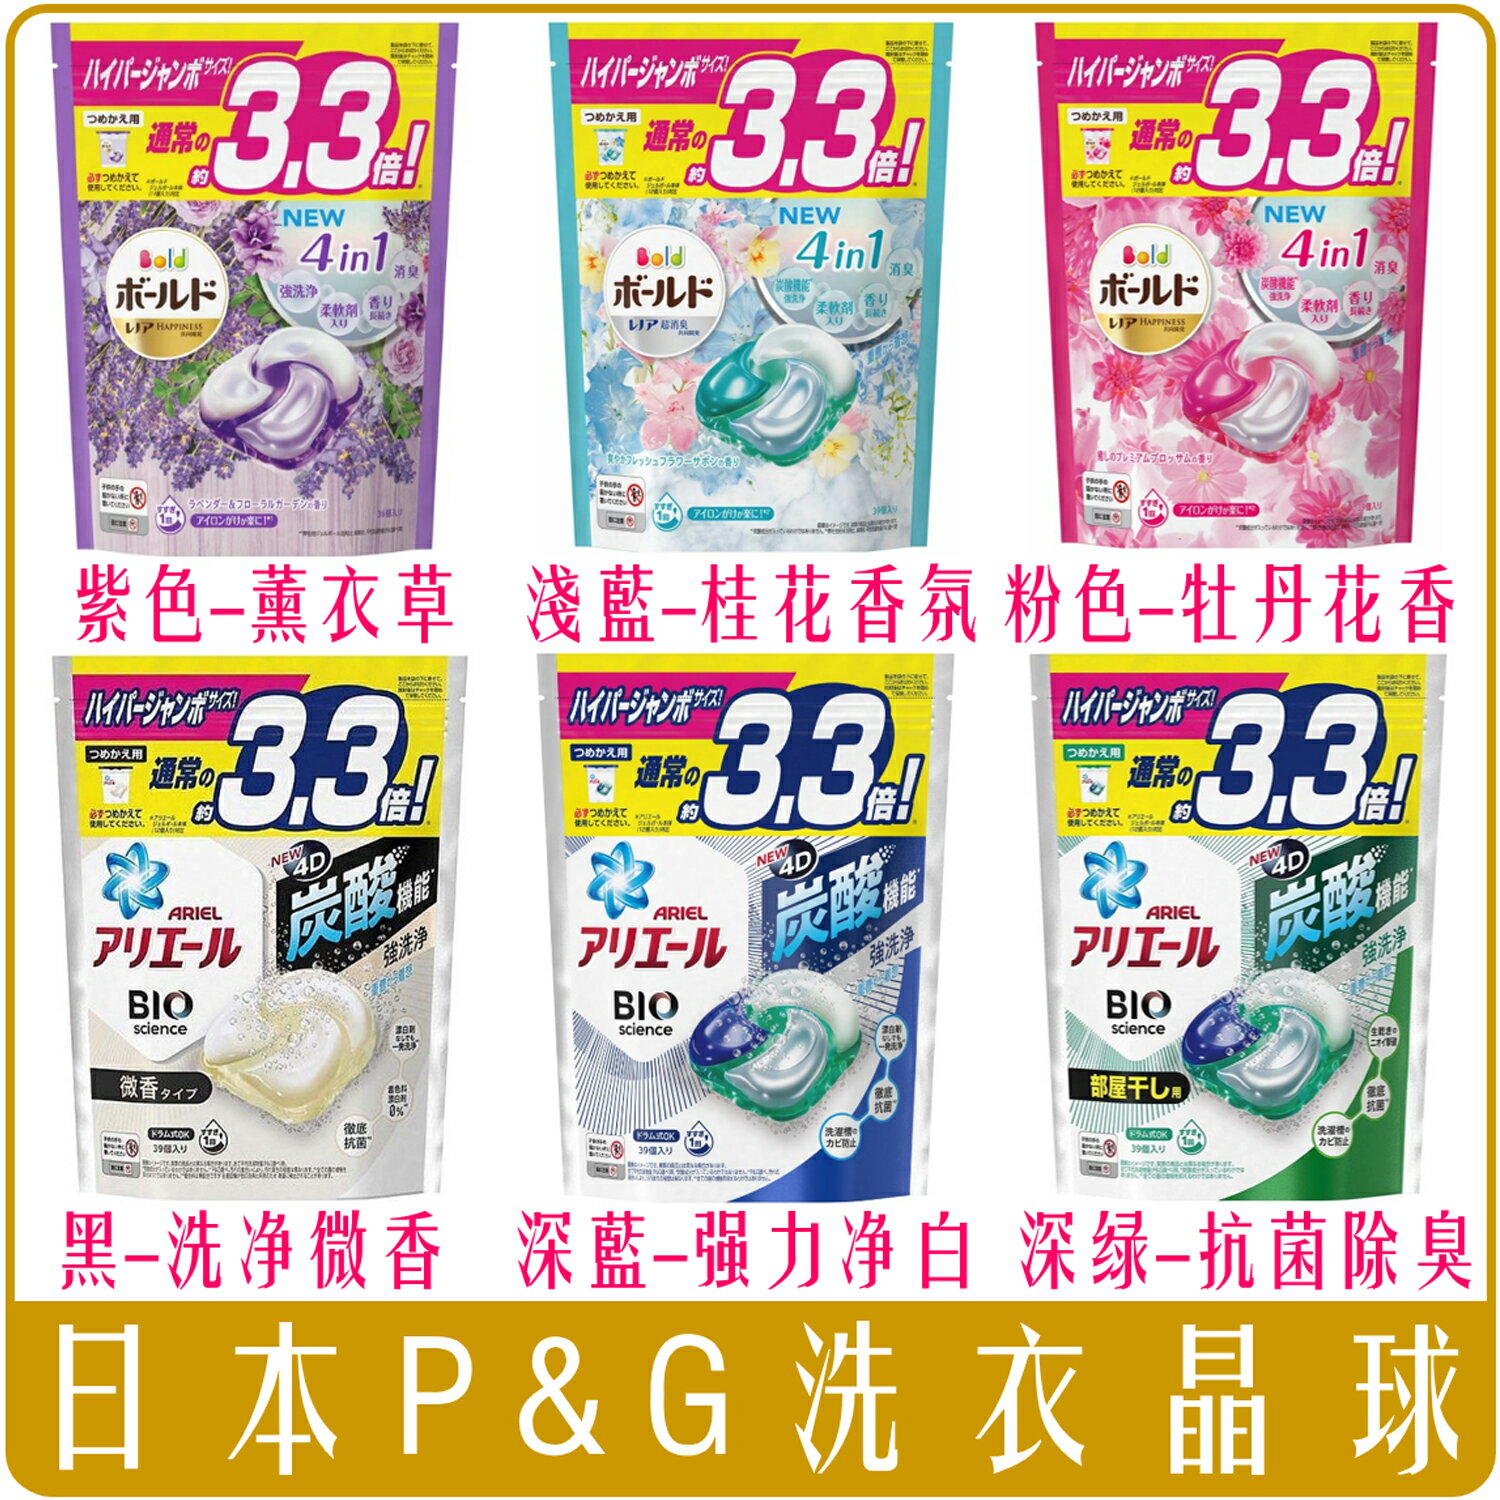 《 Chara 微百貨 》 日本 P&G 洗衣球 4D 洗衣 膠球 晶球 盒裝 補充包 抗菌 除臭